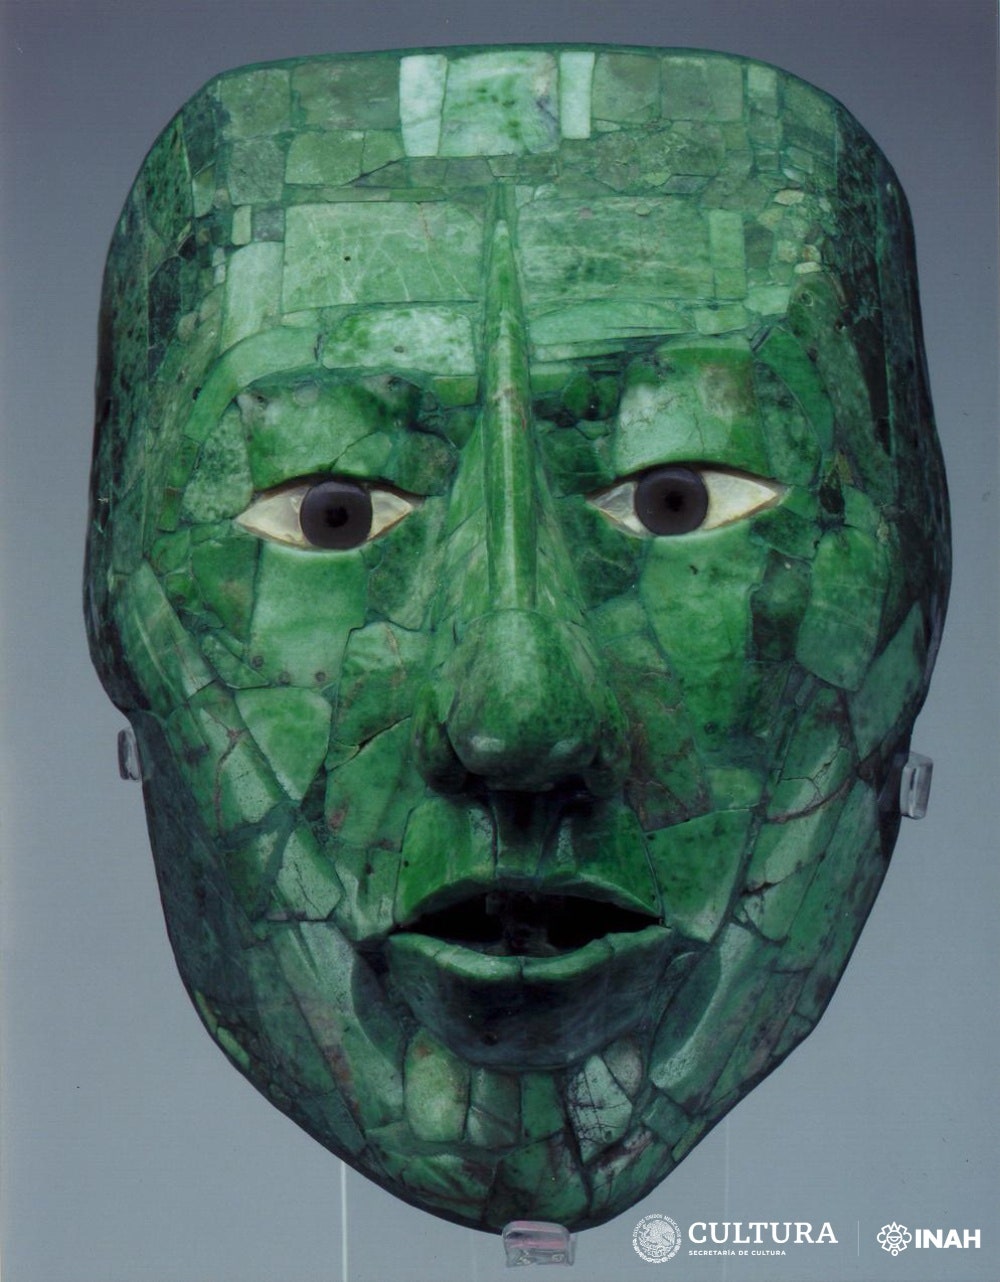 ciencia y (mucha) paciencia: la historia detrás de la restauración de la máscara de jade de pakal